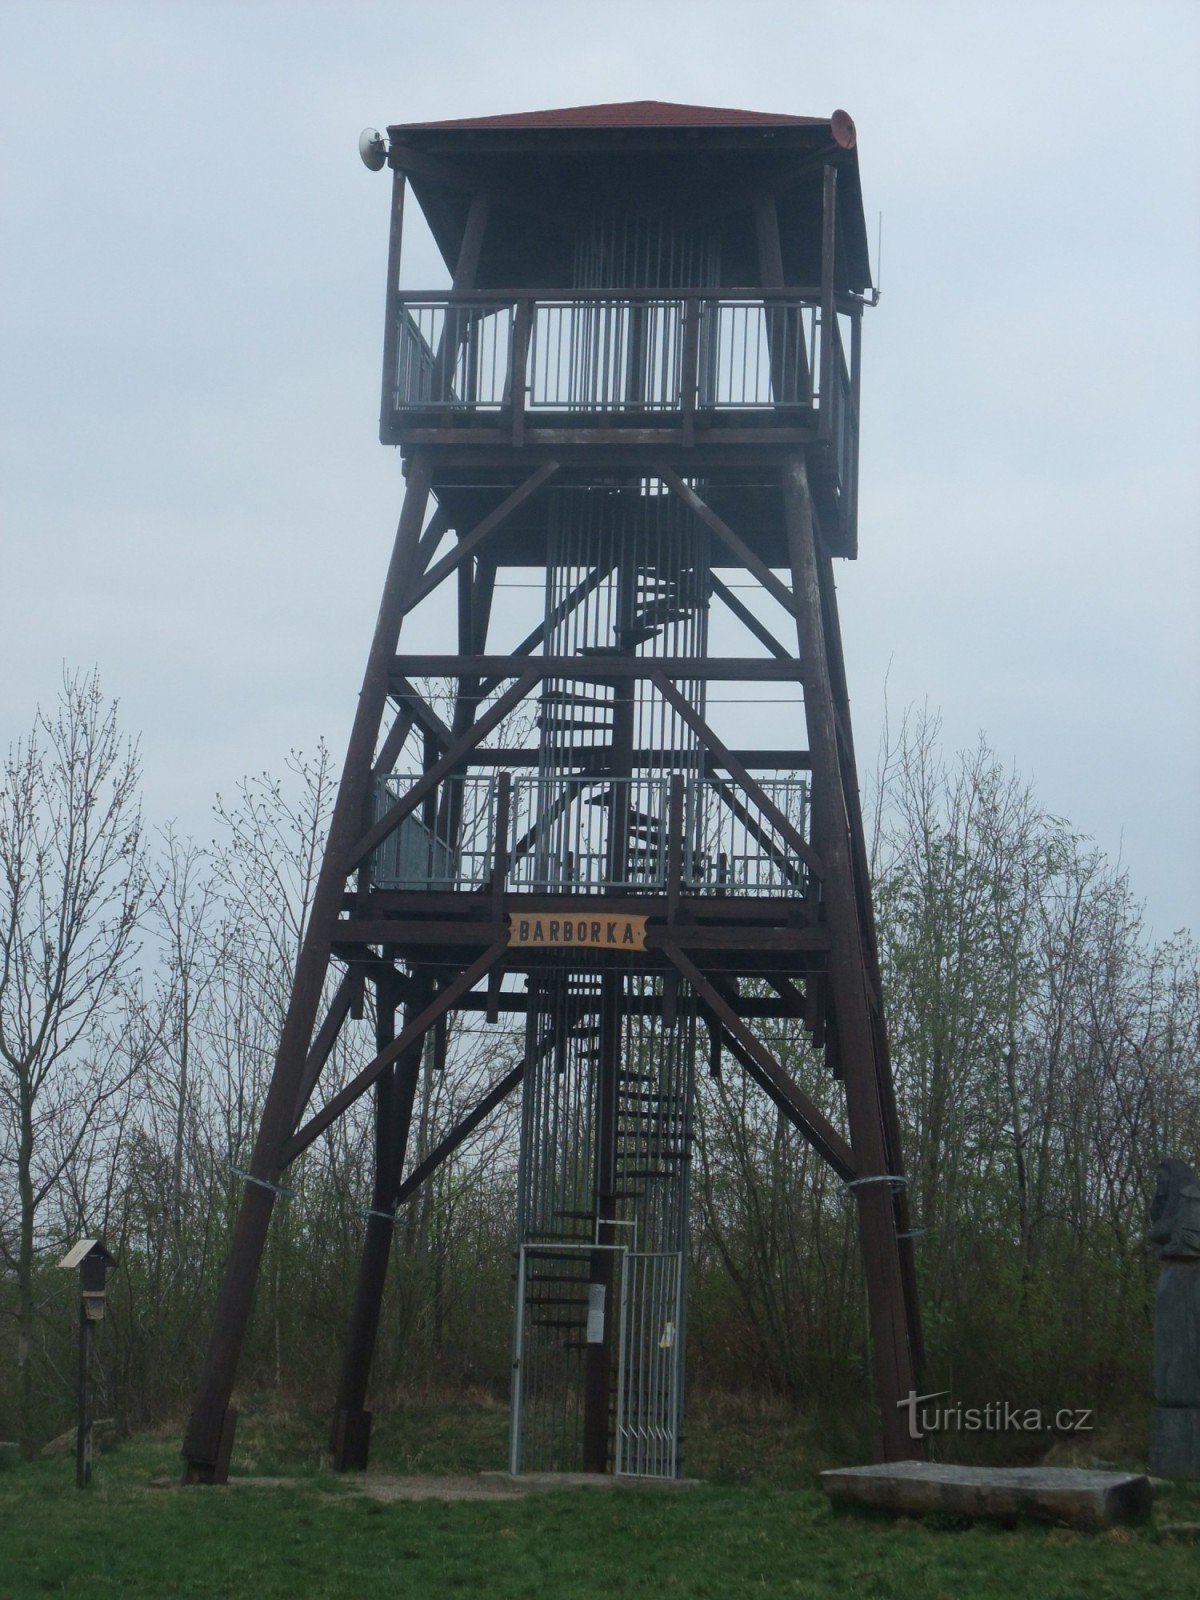 Barborka uitkijktoren